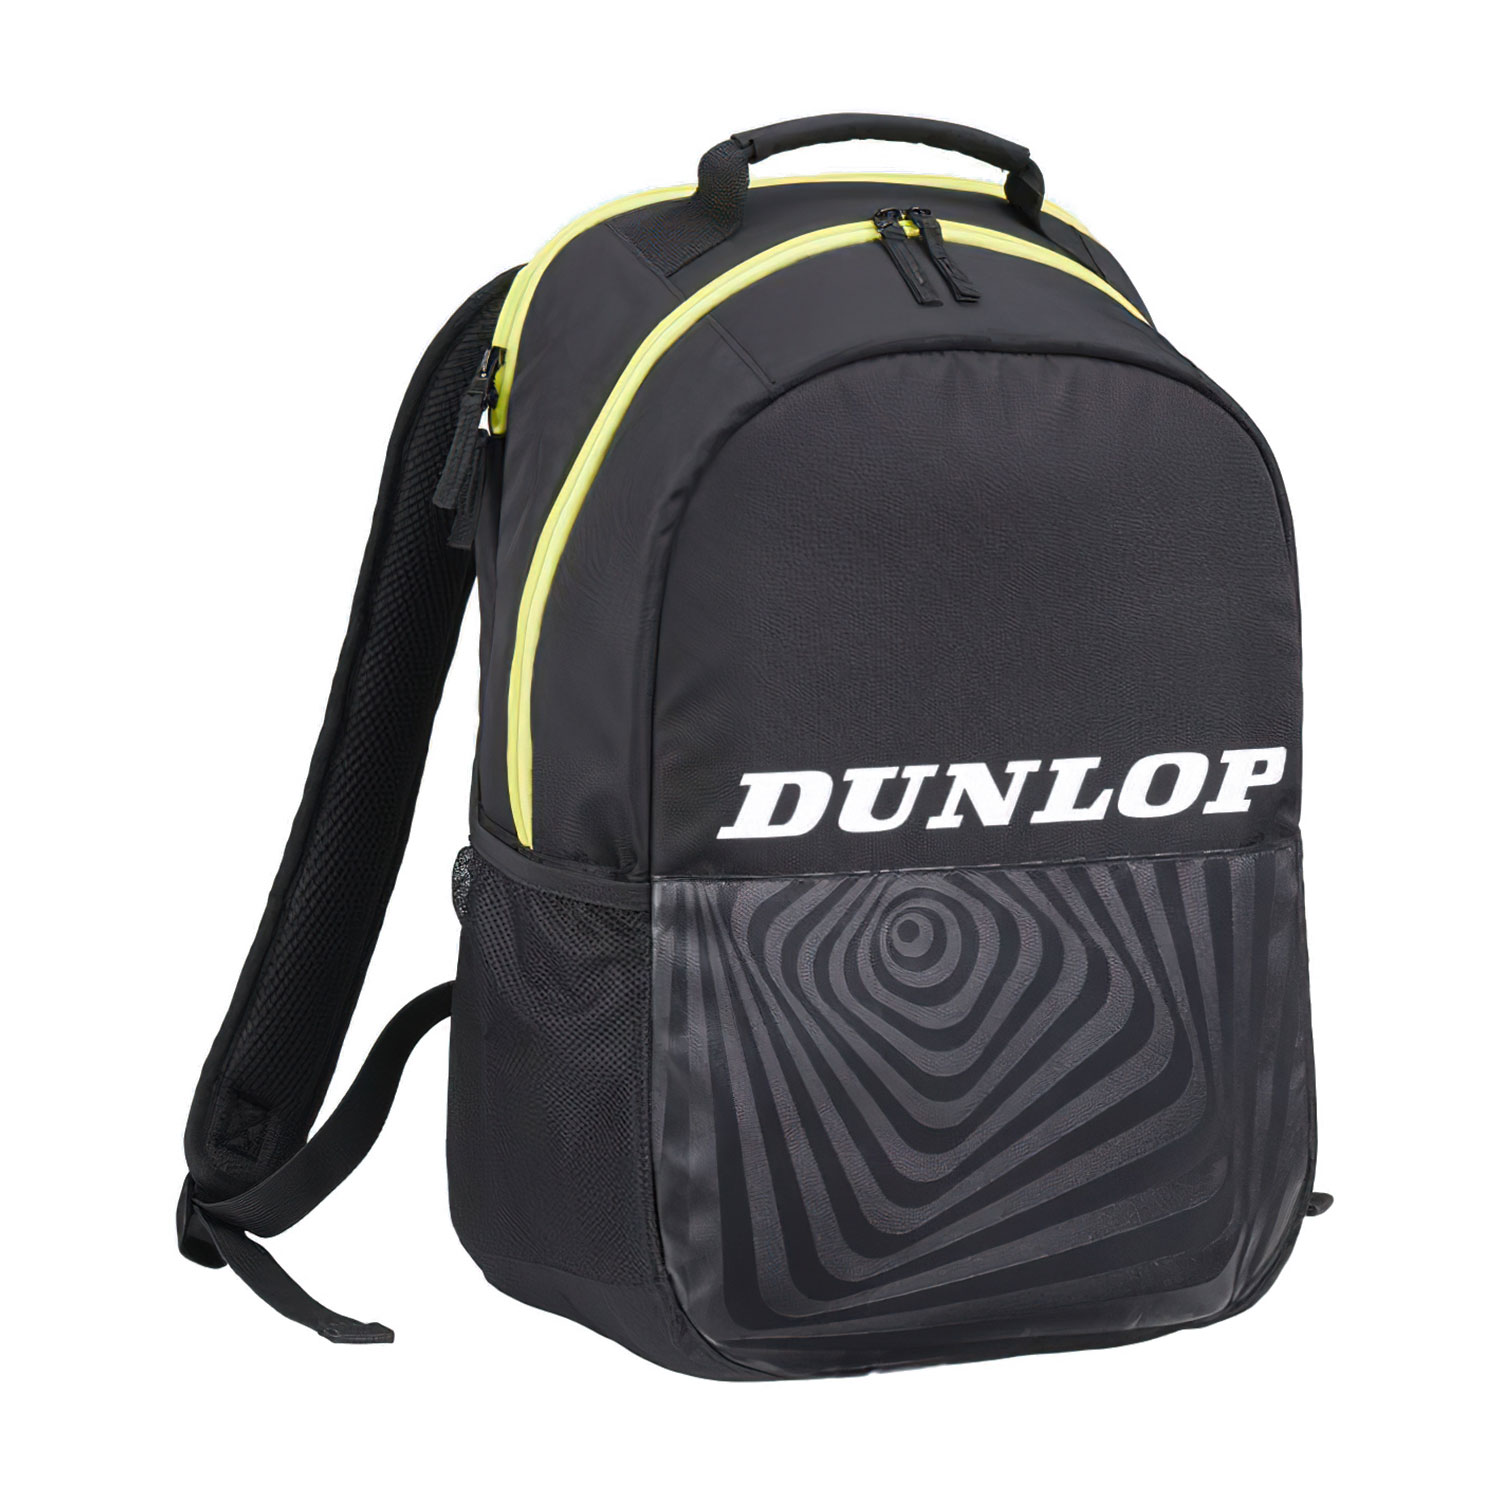 Dunlop SX Club Mochila - Black/Yellow